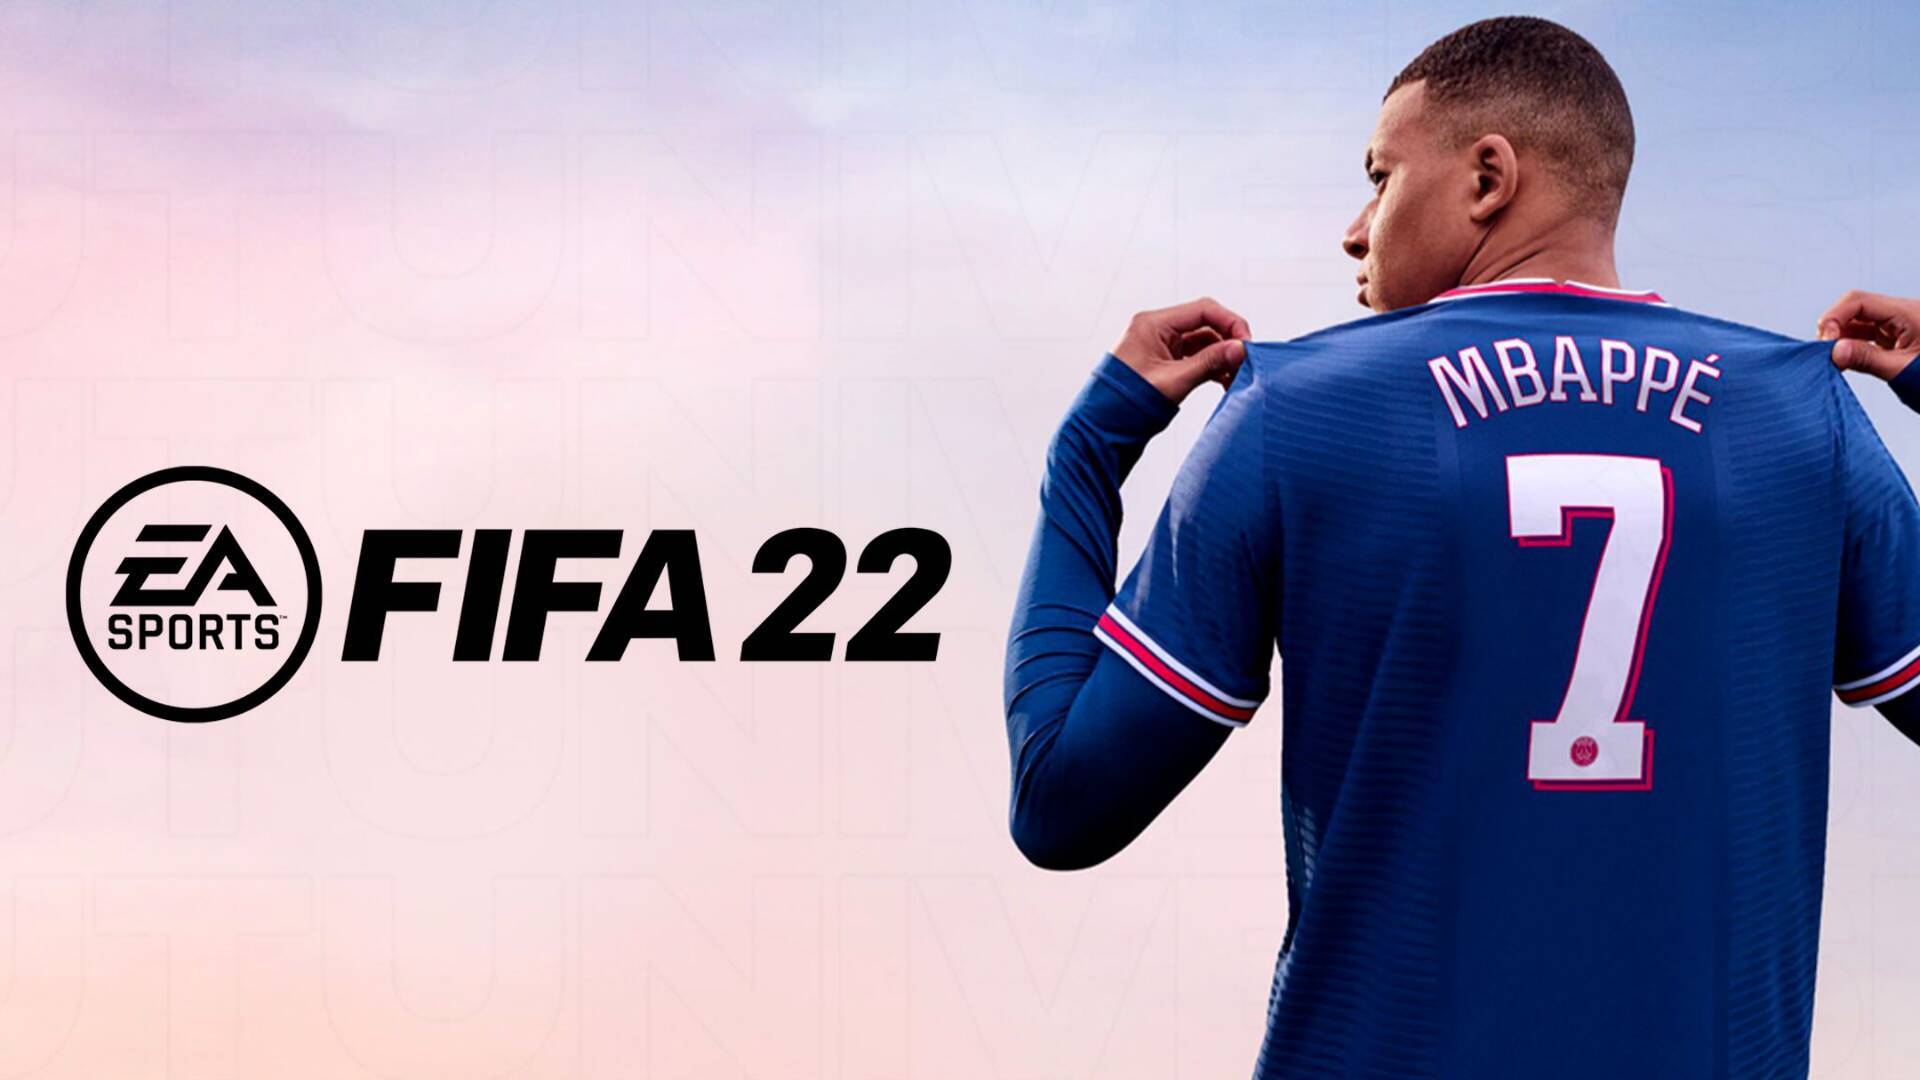 لعبة فيفا 22 الرسمية FIFA 22 Mobile للكمبيوتر والاندرويد واهم المميزات المضافة